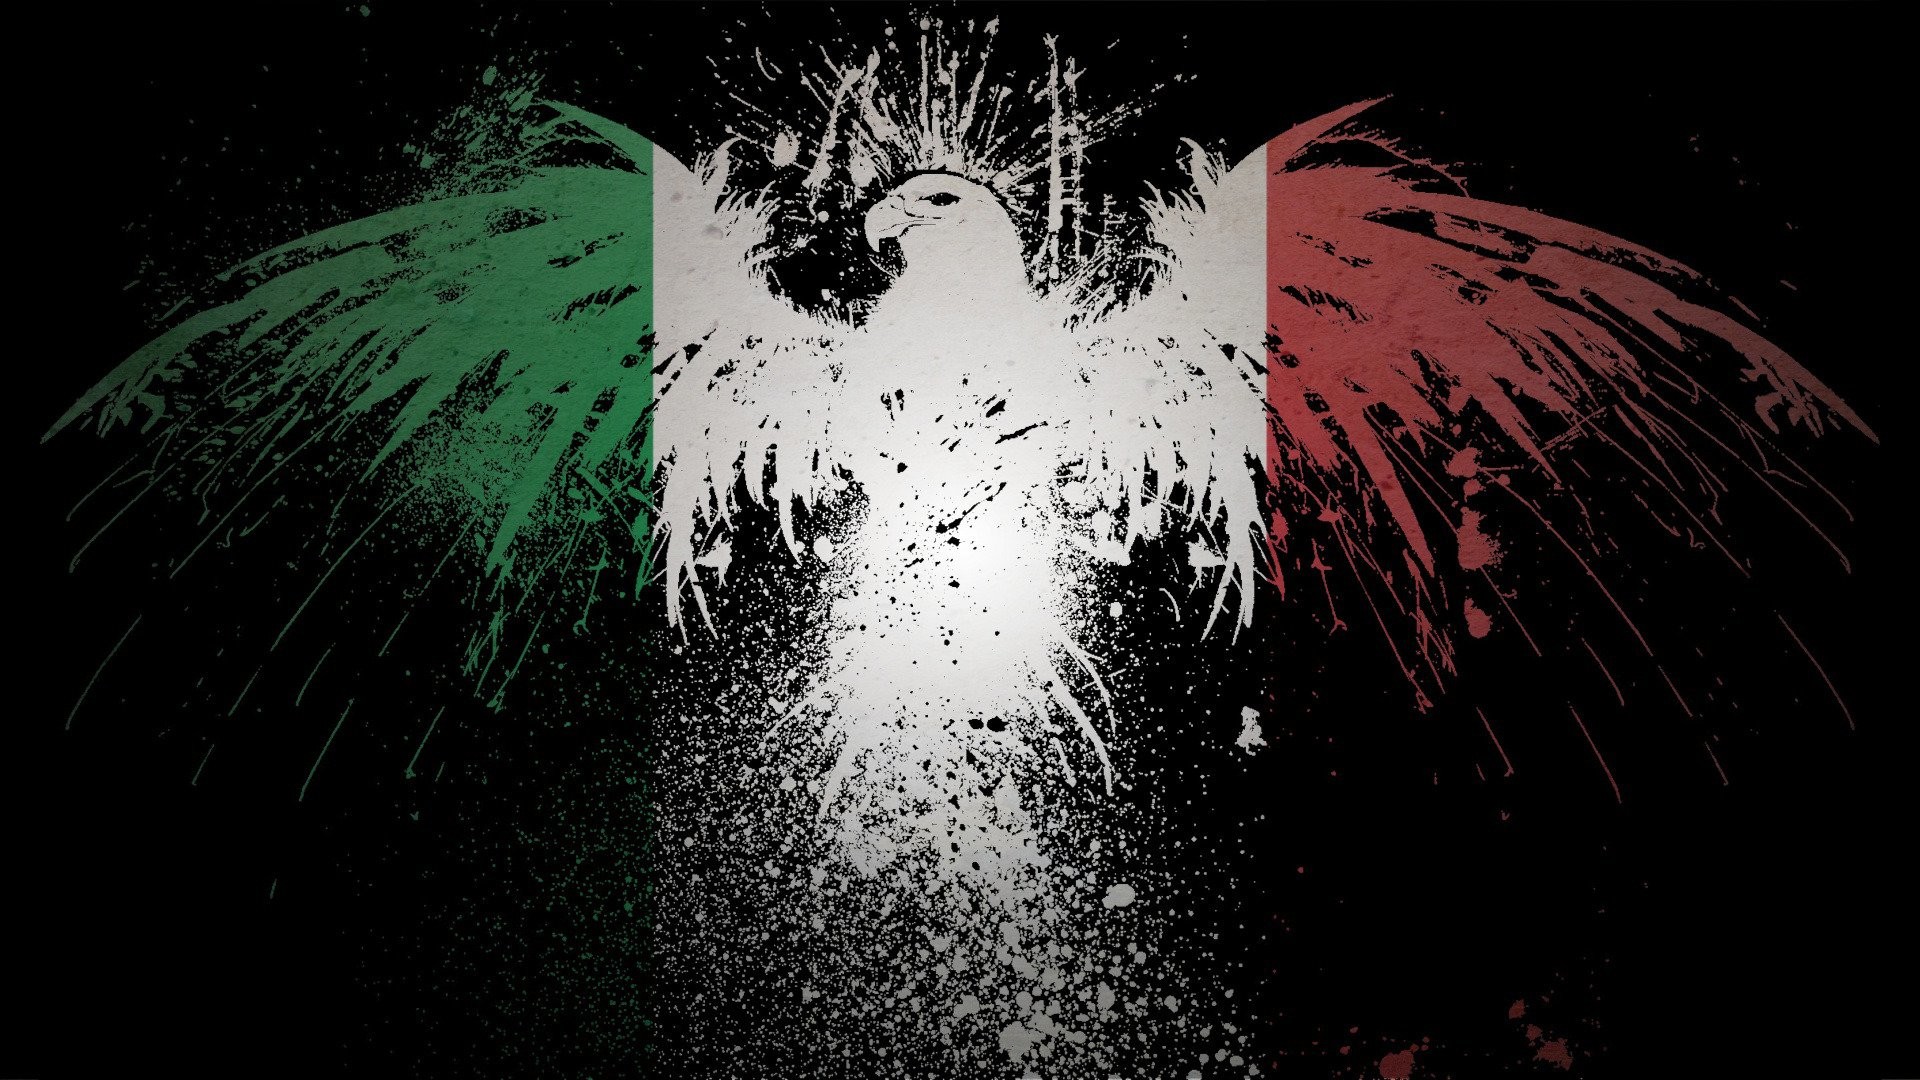 1920x1080 Italian Wallpaper 1400Ã1000 Italian Flag Images Wallpapers (27 Wallpapers)  | Adorable Wallpapers | Desktop | Pinterest | Italian flag image and  Wallpaper